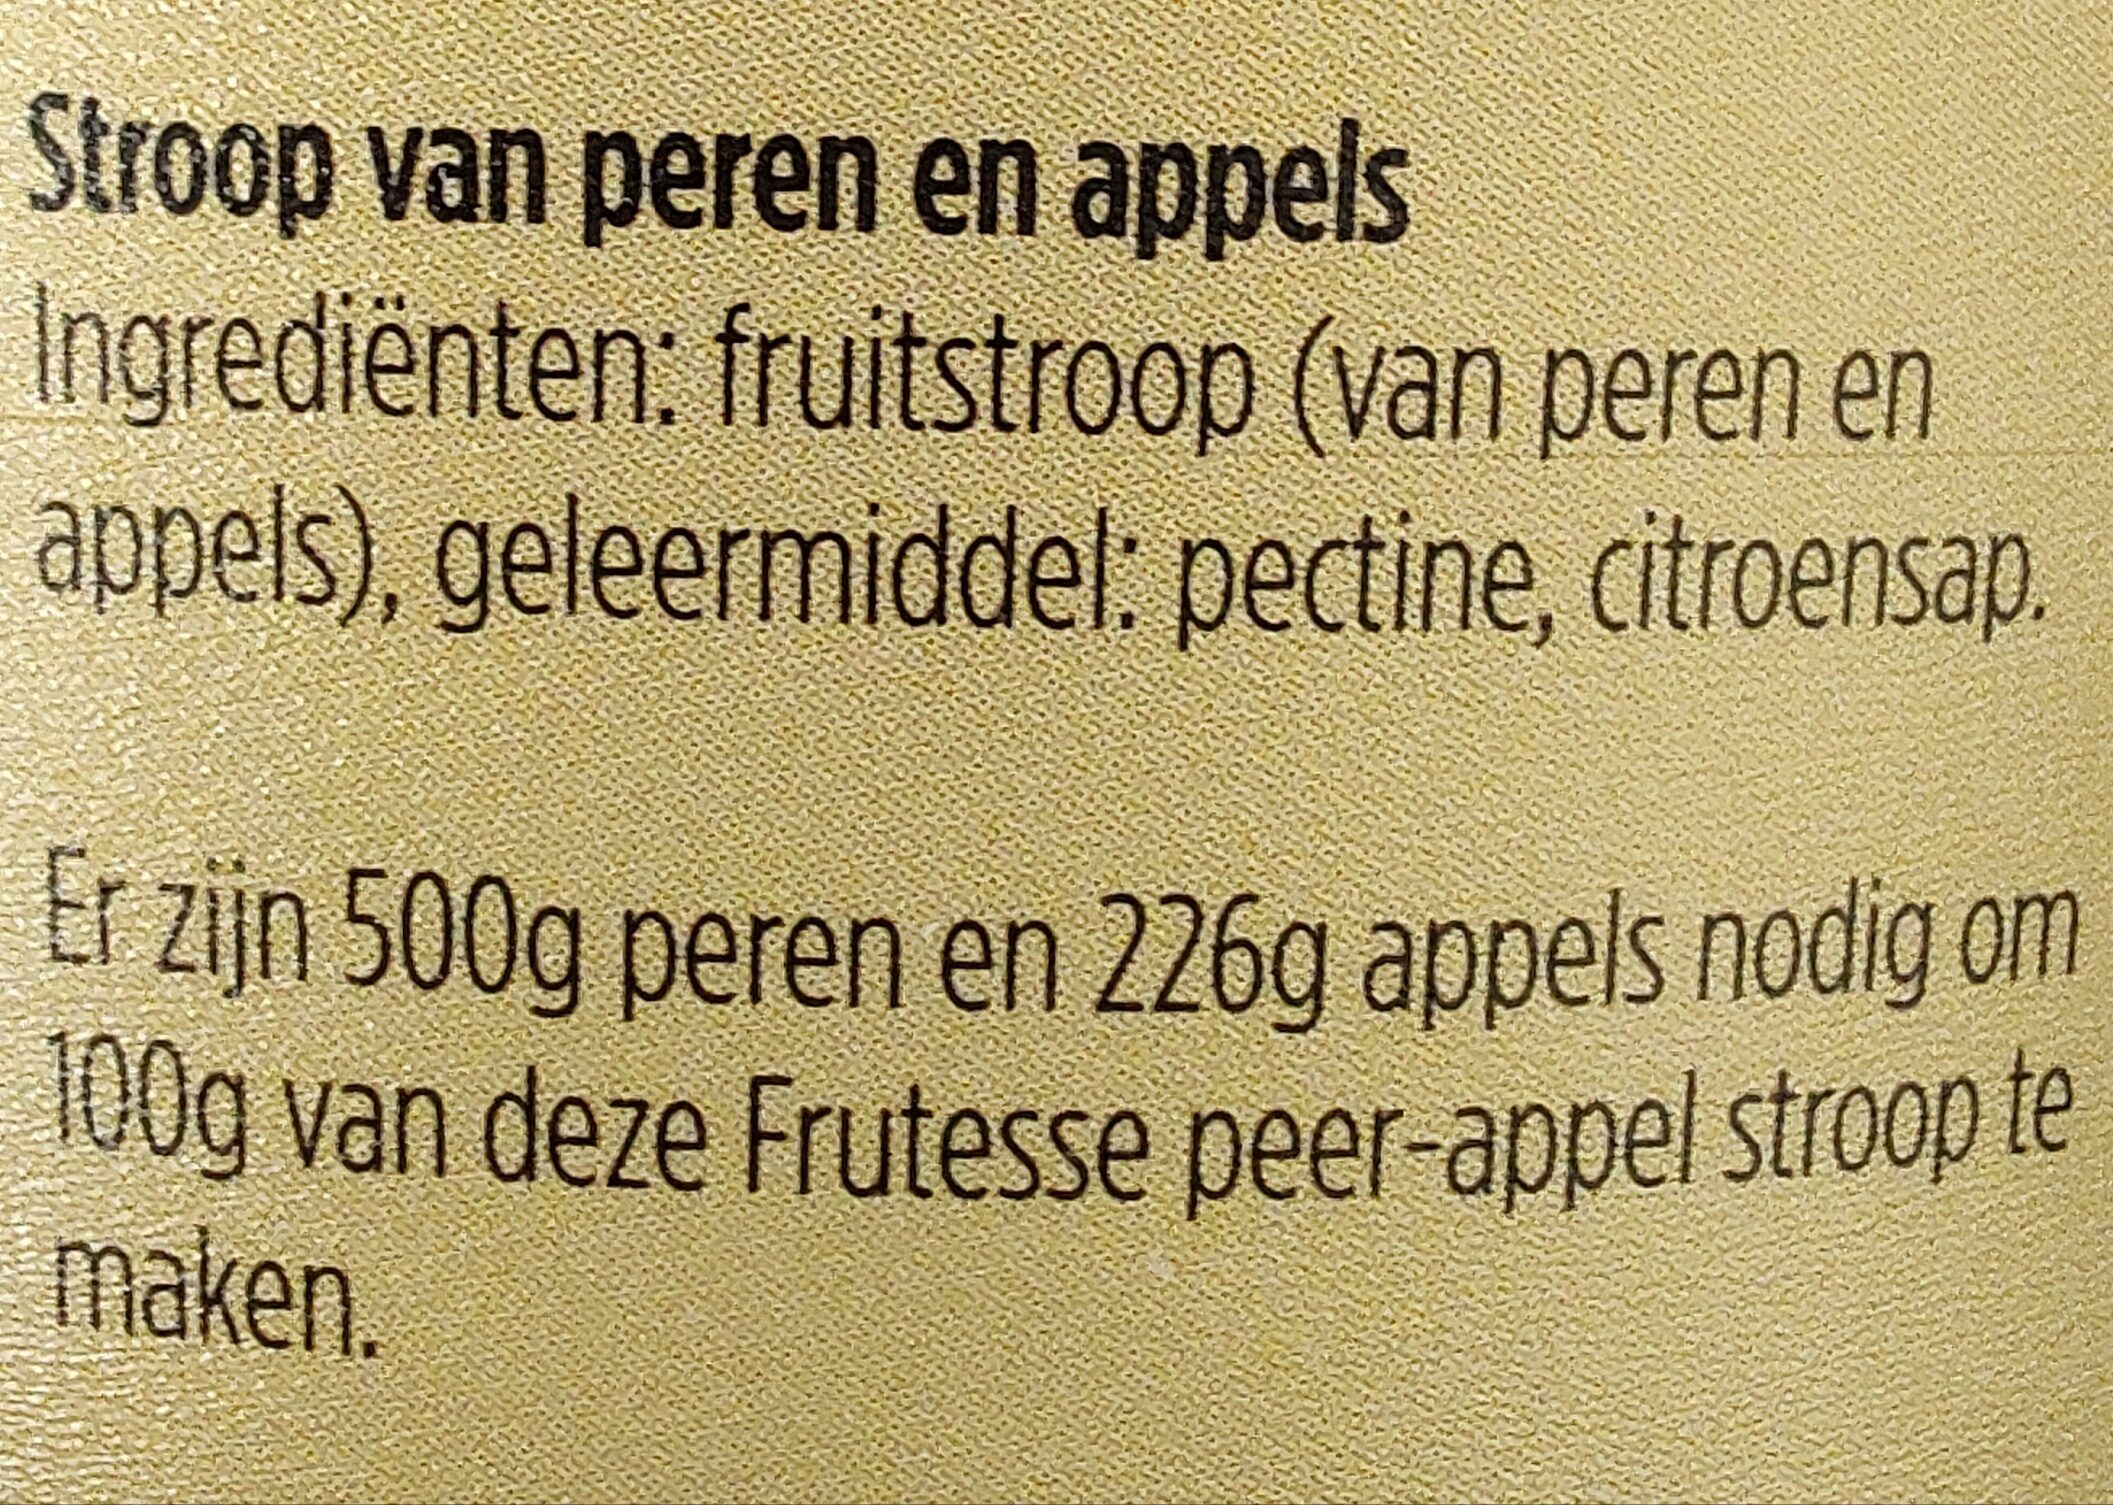 Stroop van peren en appels - Ingrediënten